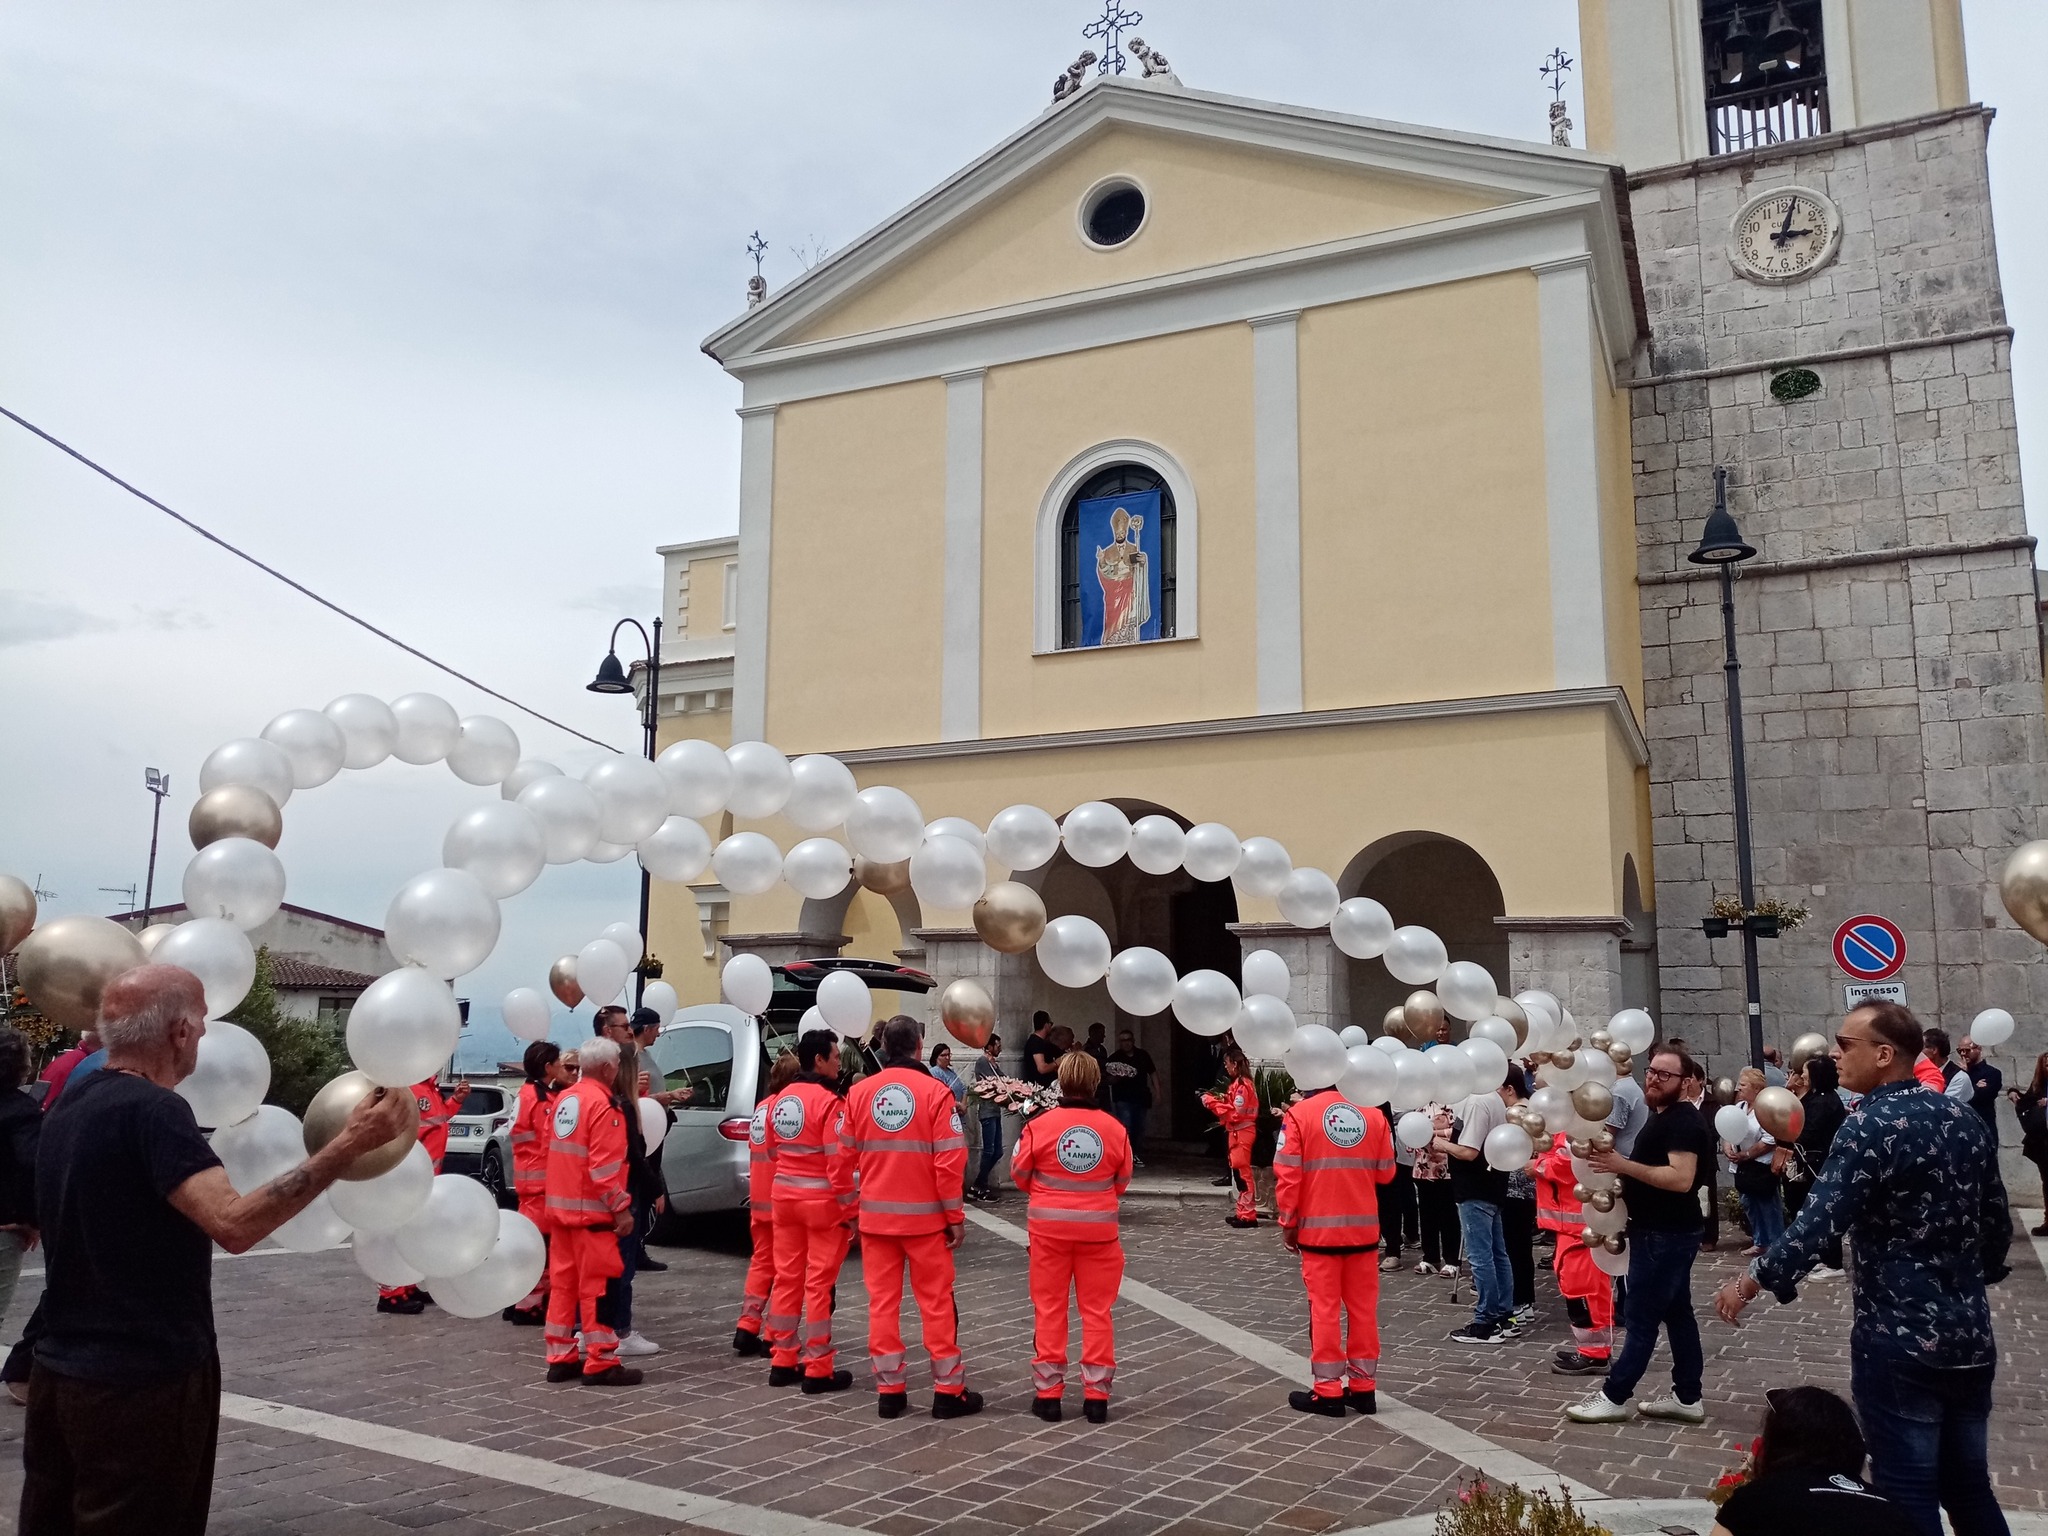 San Leucio del Sannio, la comunità e la Protezione Civile in lutto per l’improvvisa scomparsa di Giacoma Ragucci